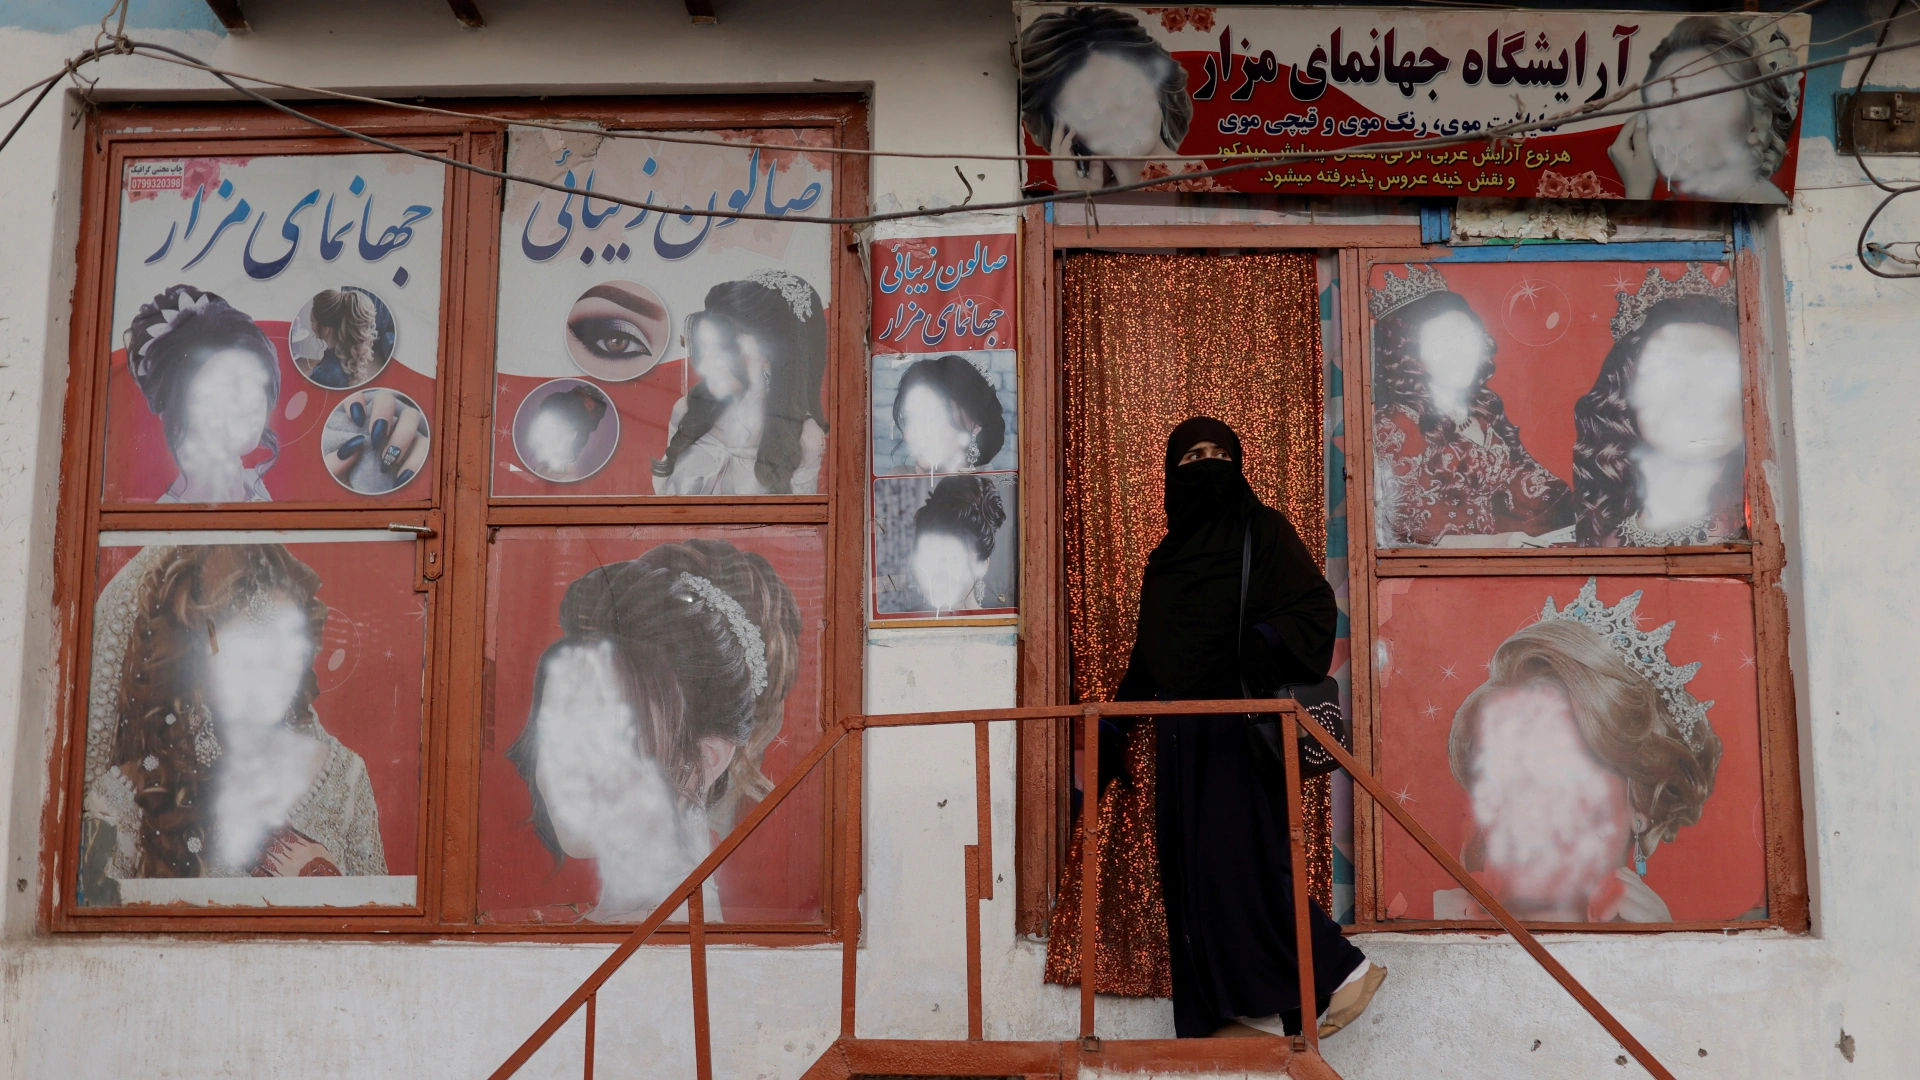 Regime do Talibã ordenou o fechamento de todos os salões de beleza do Afeganistão